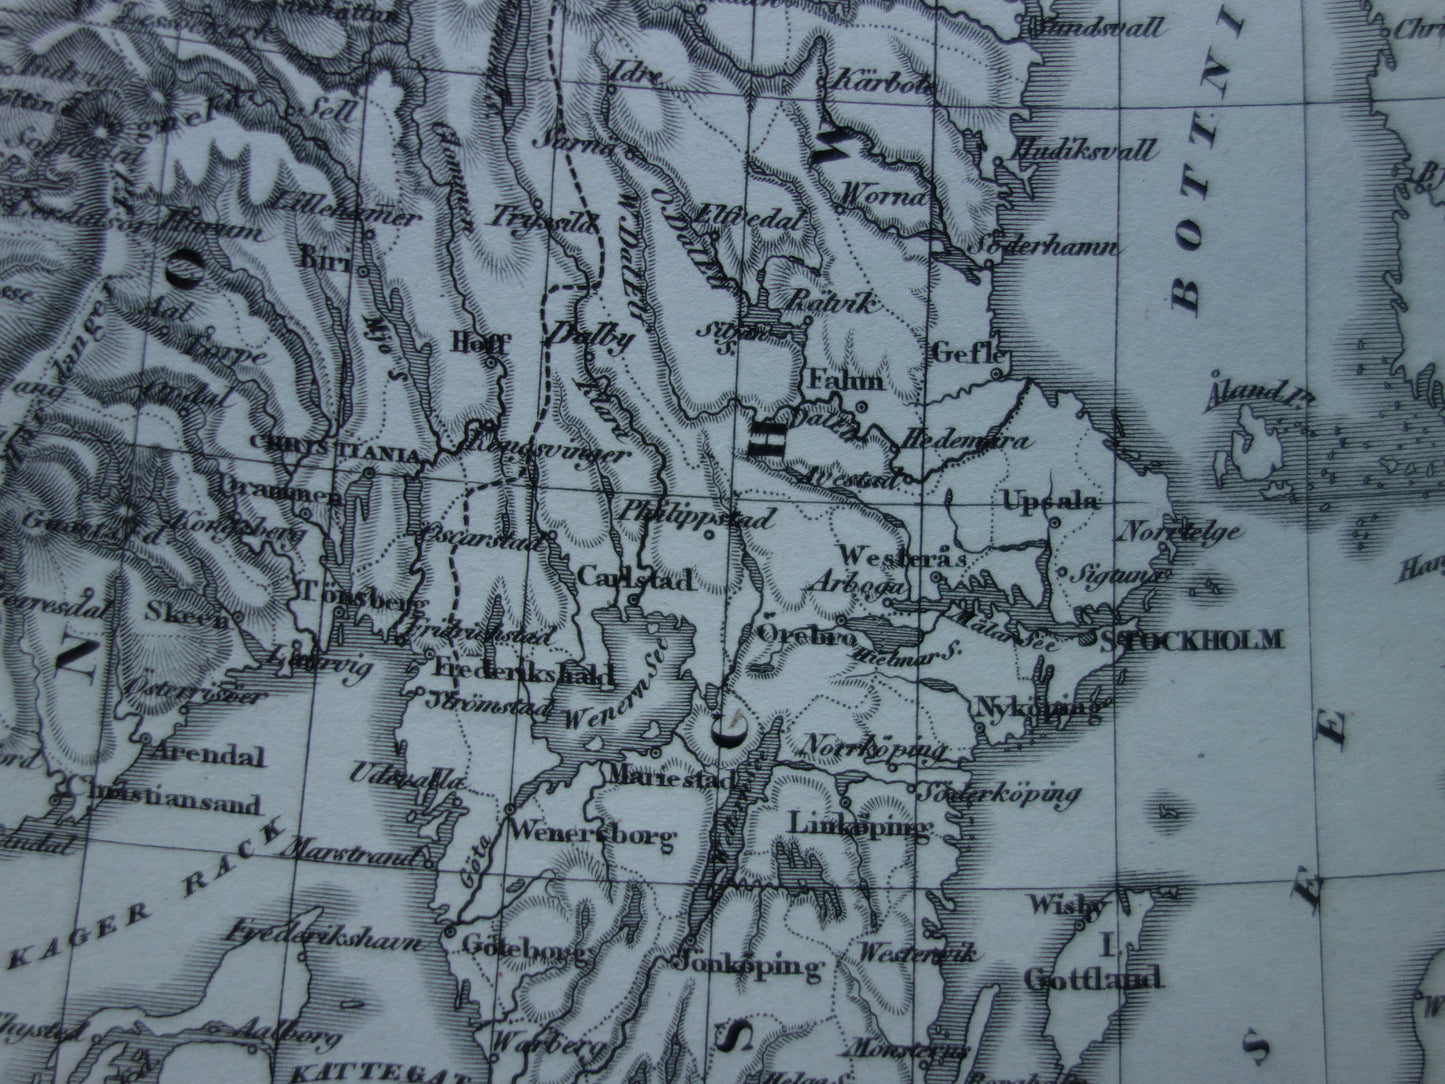 SCANDINAVIE antieke kaart van Zweden, Noorwegen en Denemarken 170+ jaar oude landkaart van Scandinavië  uit 1849 - originele vintage historische kaarten